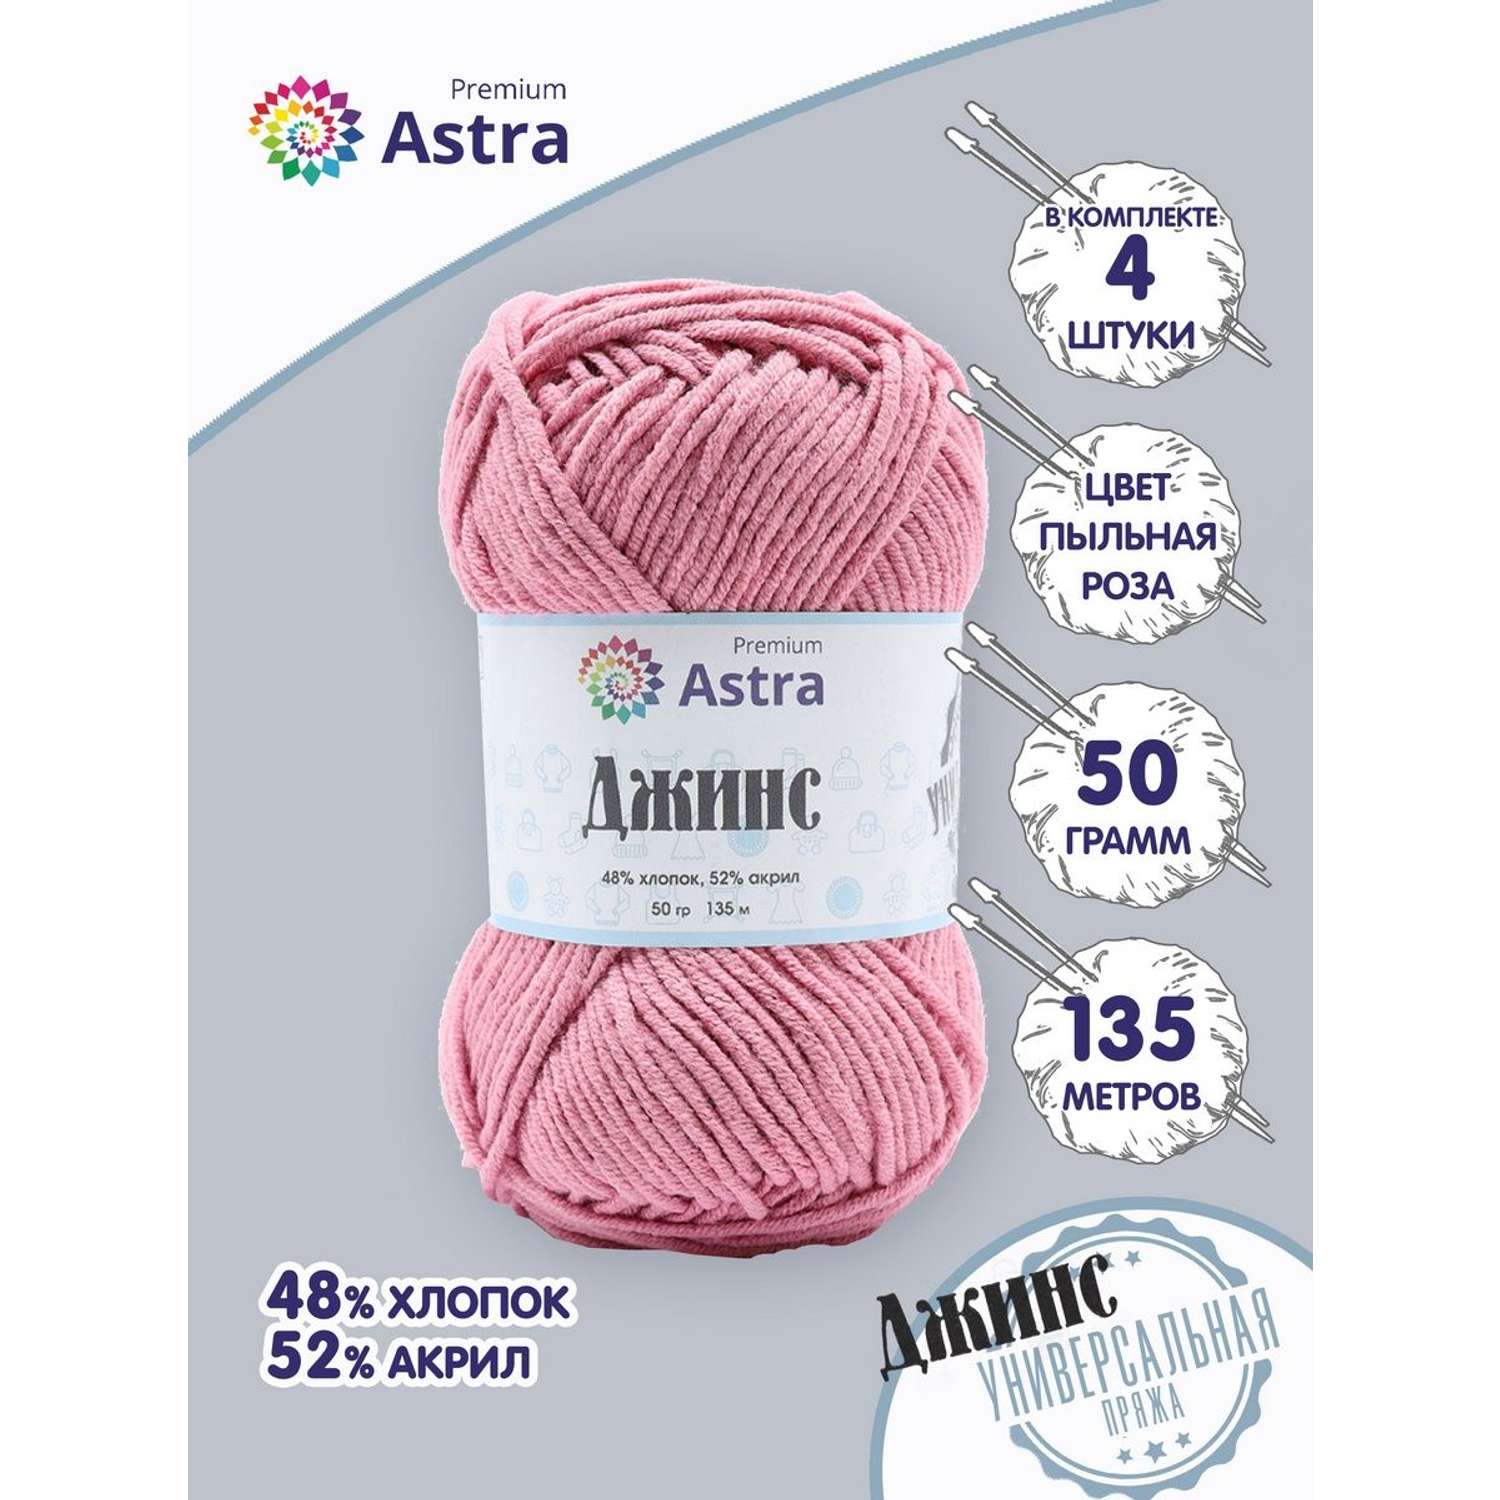 Пряжа для вязания Astra Premium джинс для повседневной одежды акрил хлопок 50 гр 135 м 140 пыльная роза 4 мотка - фото 1